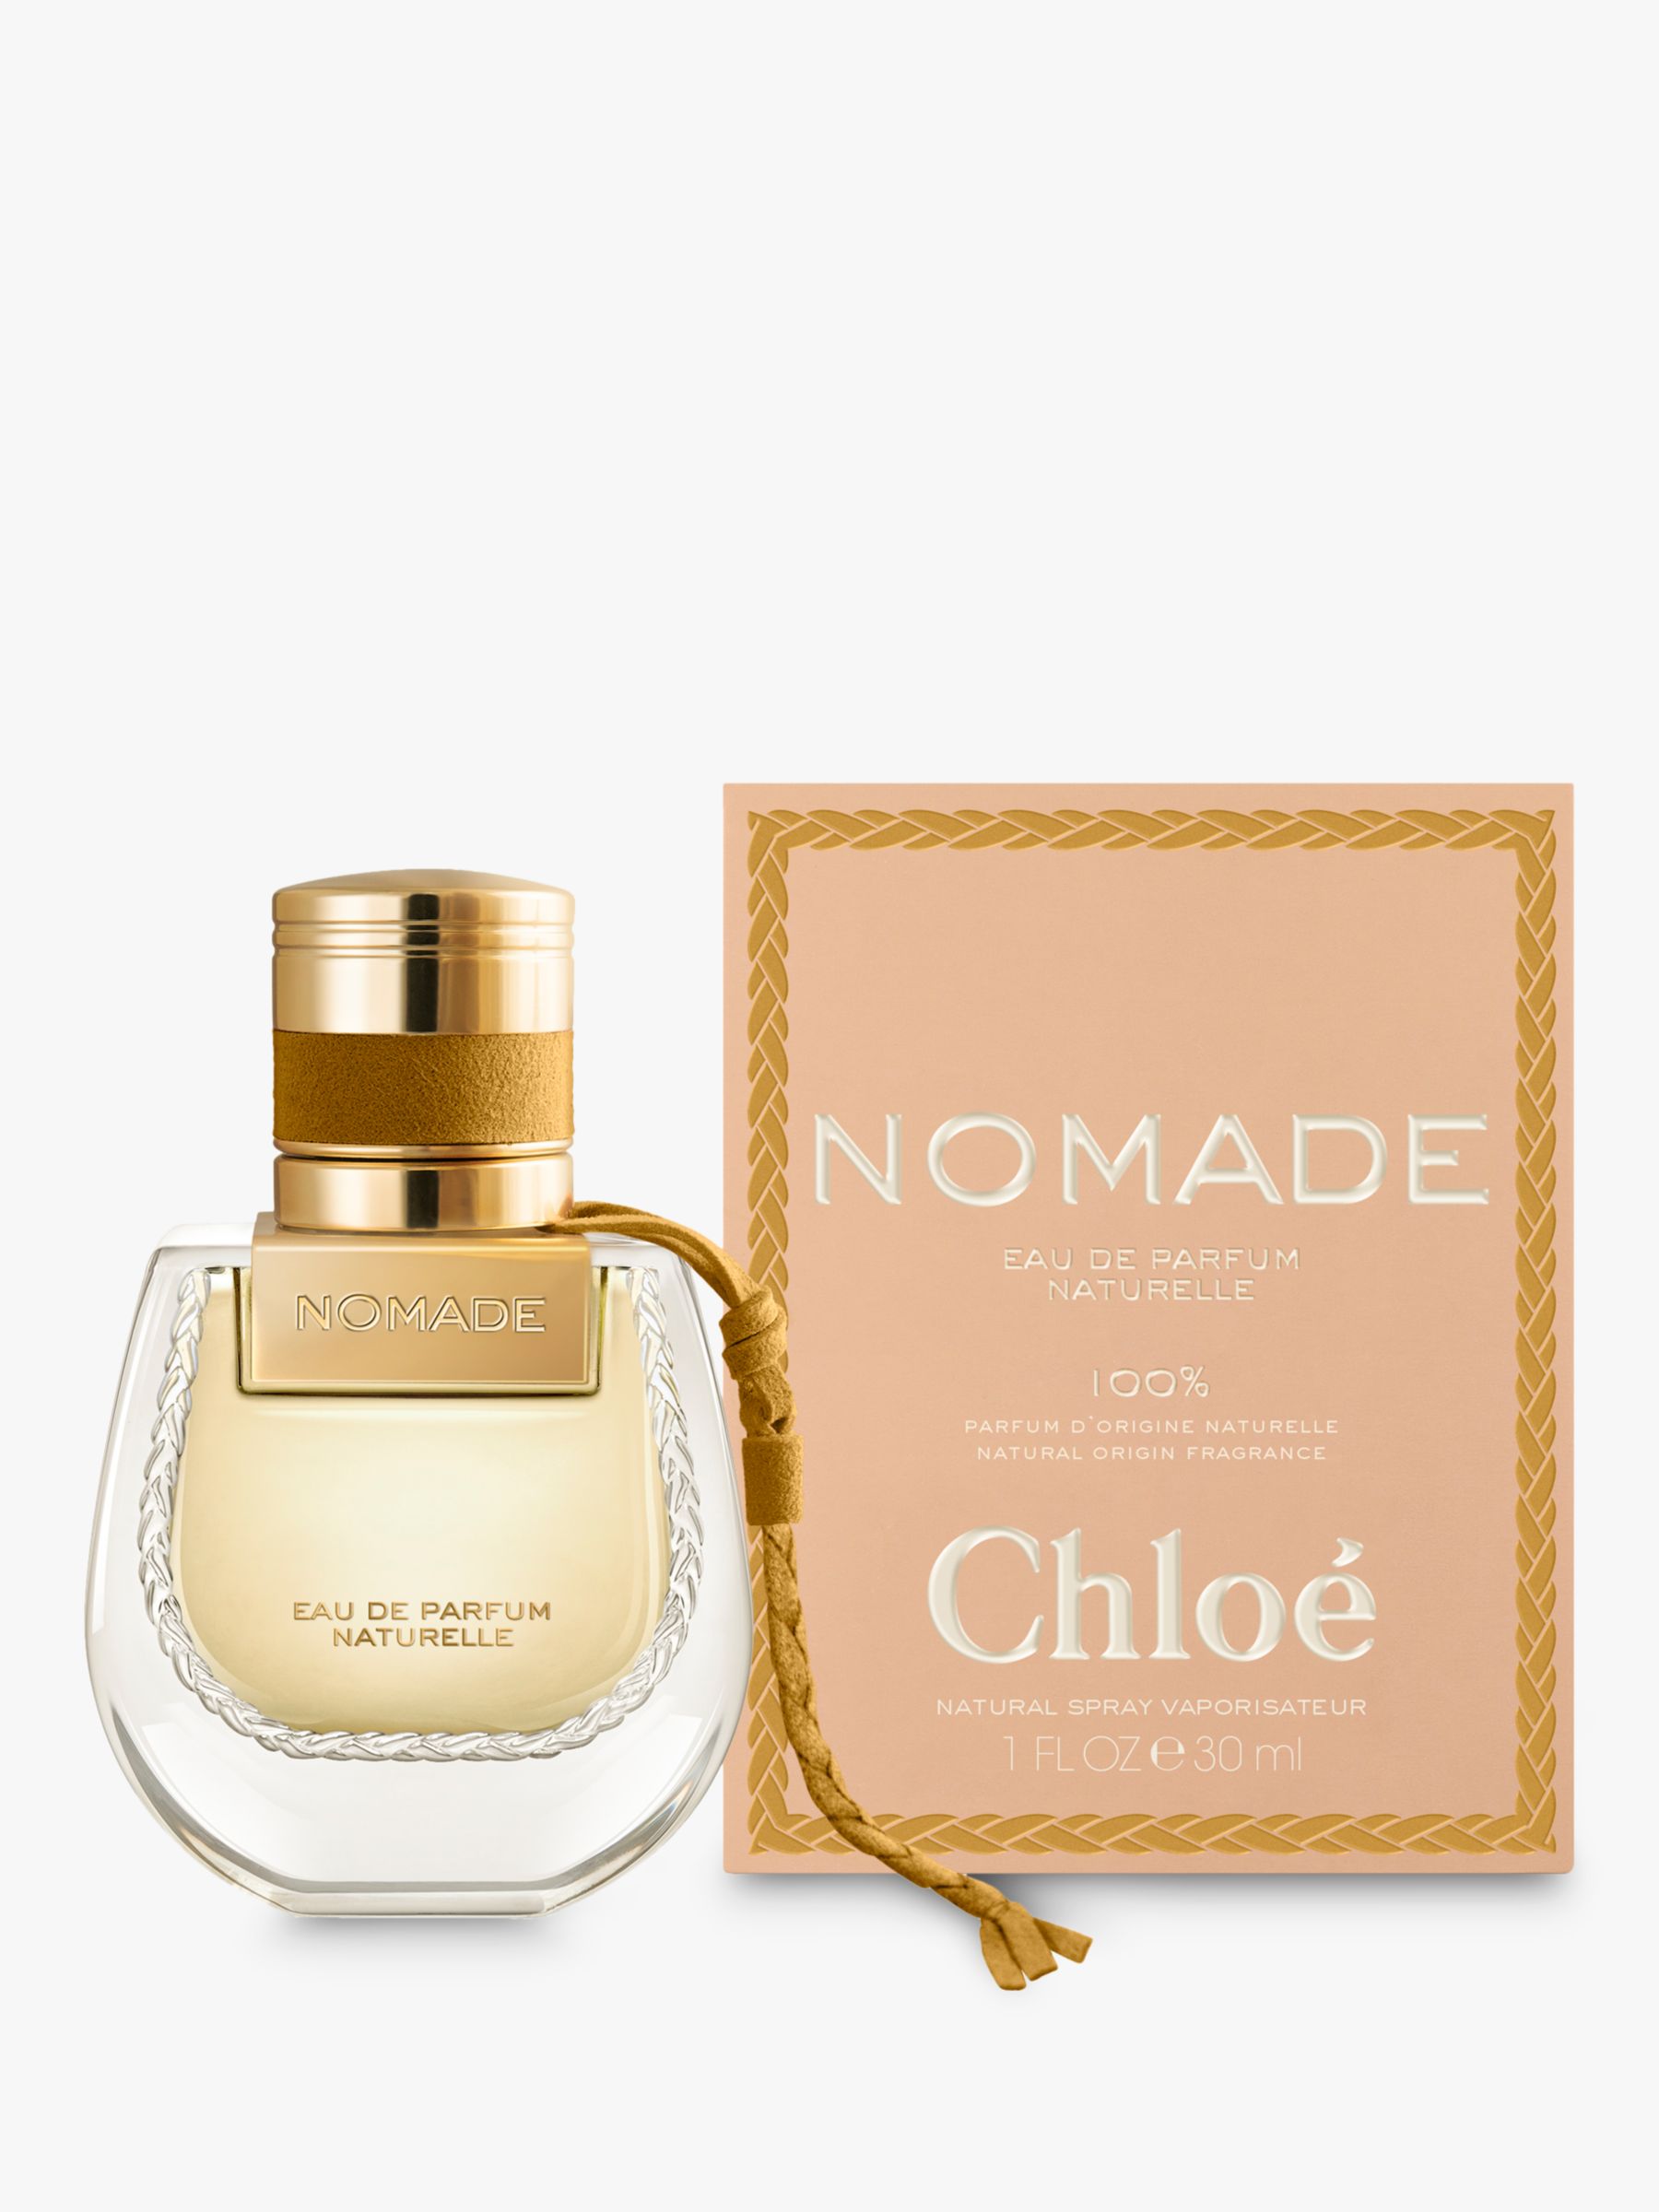 Chloé Nomade Eau de Parfum Naturelle, 30ml at John Lewis & ...